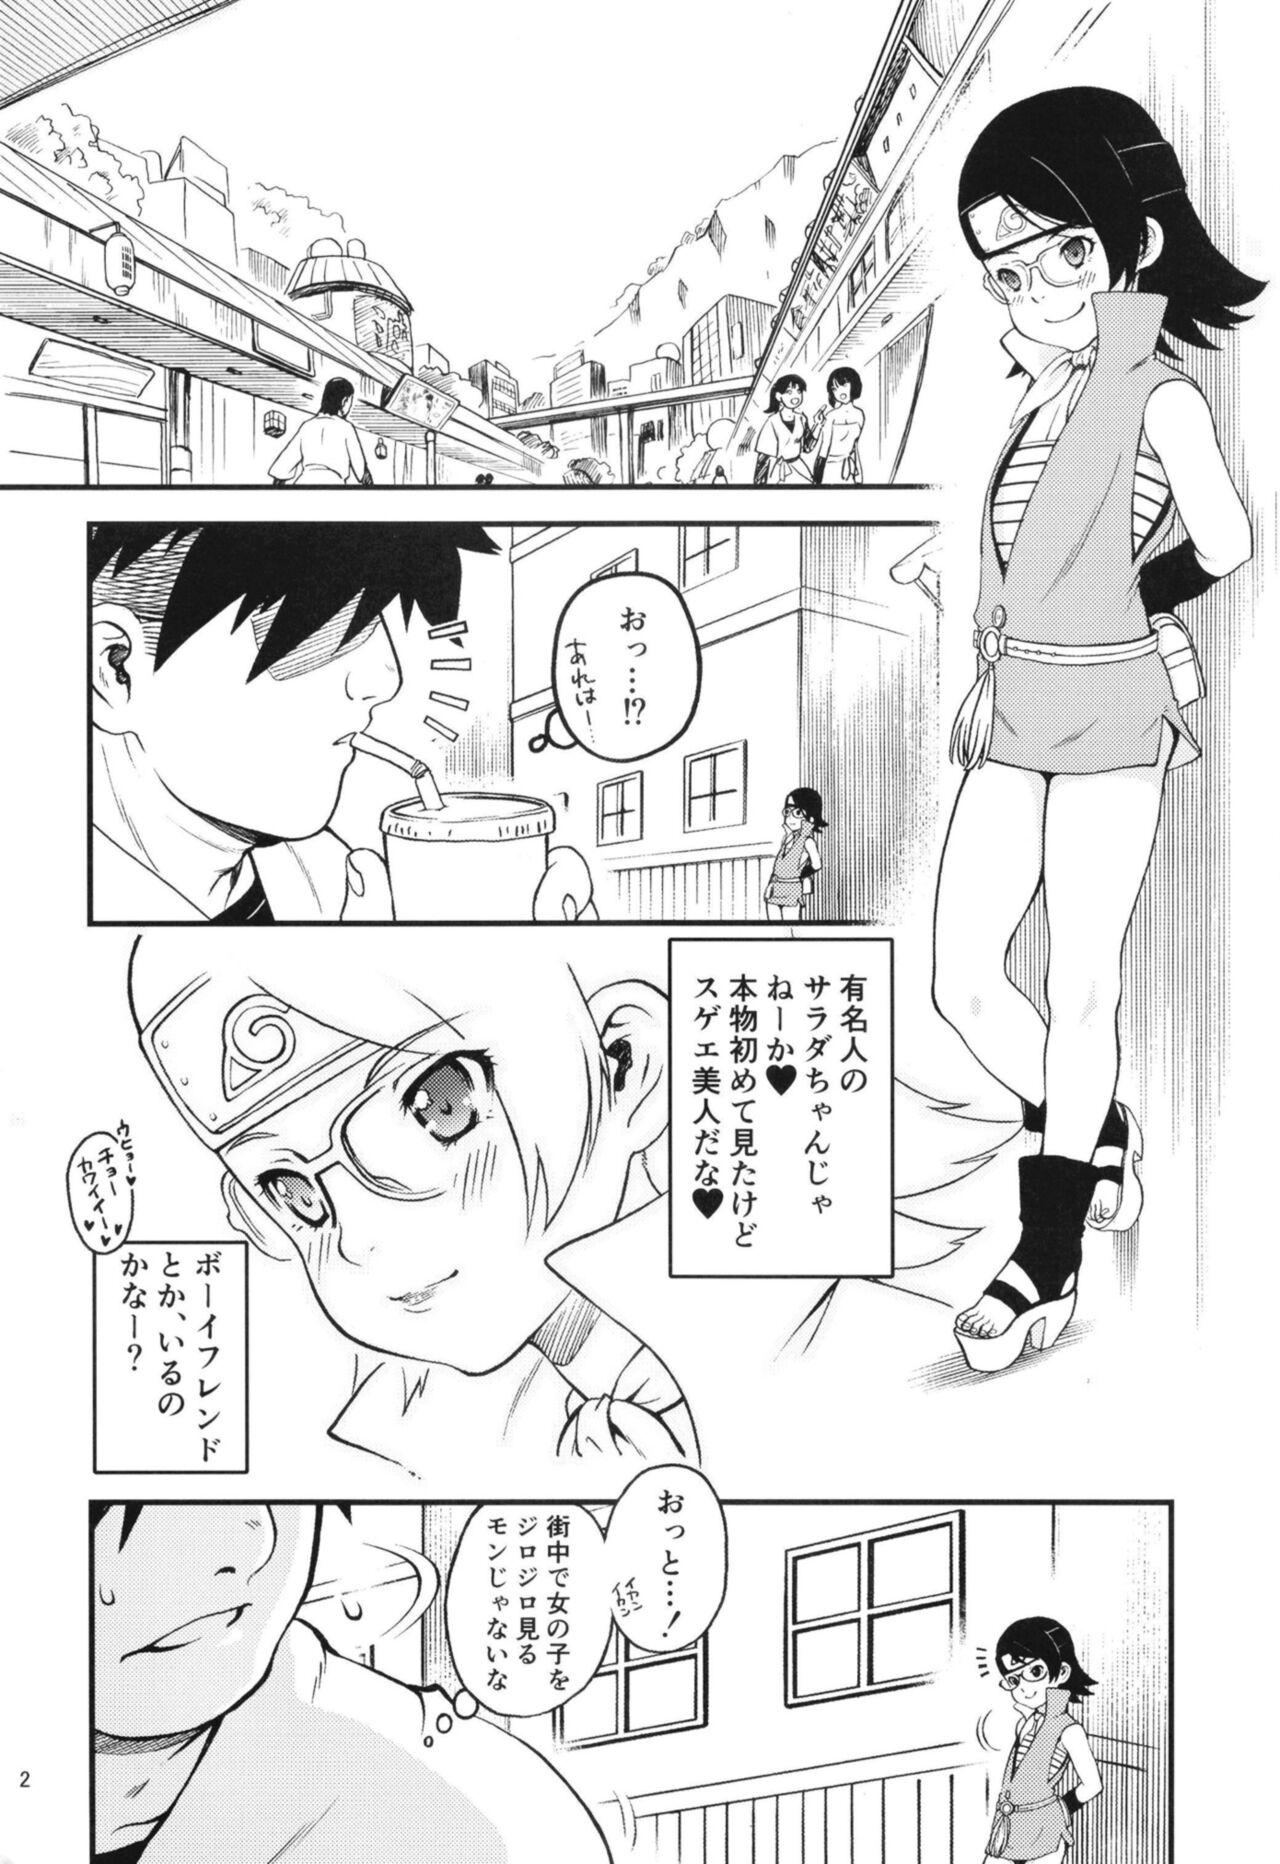 Orgia Onii-san! Chotto Chakra Wakete Kudasai!! - Boruto Str8 - Page 4